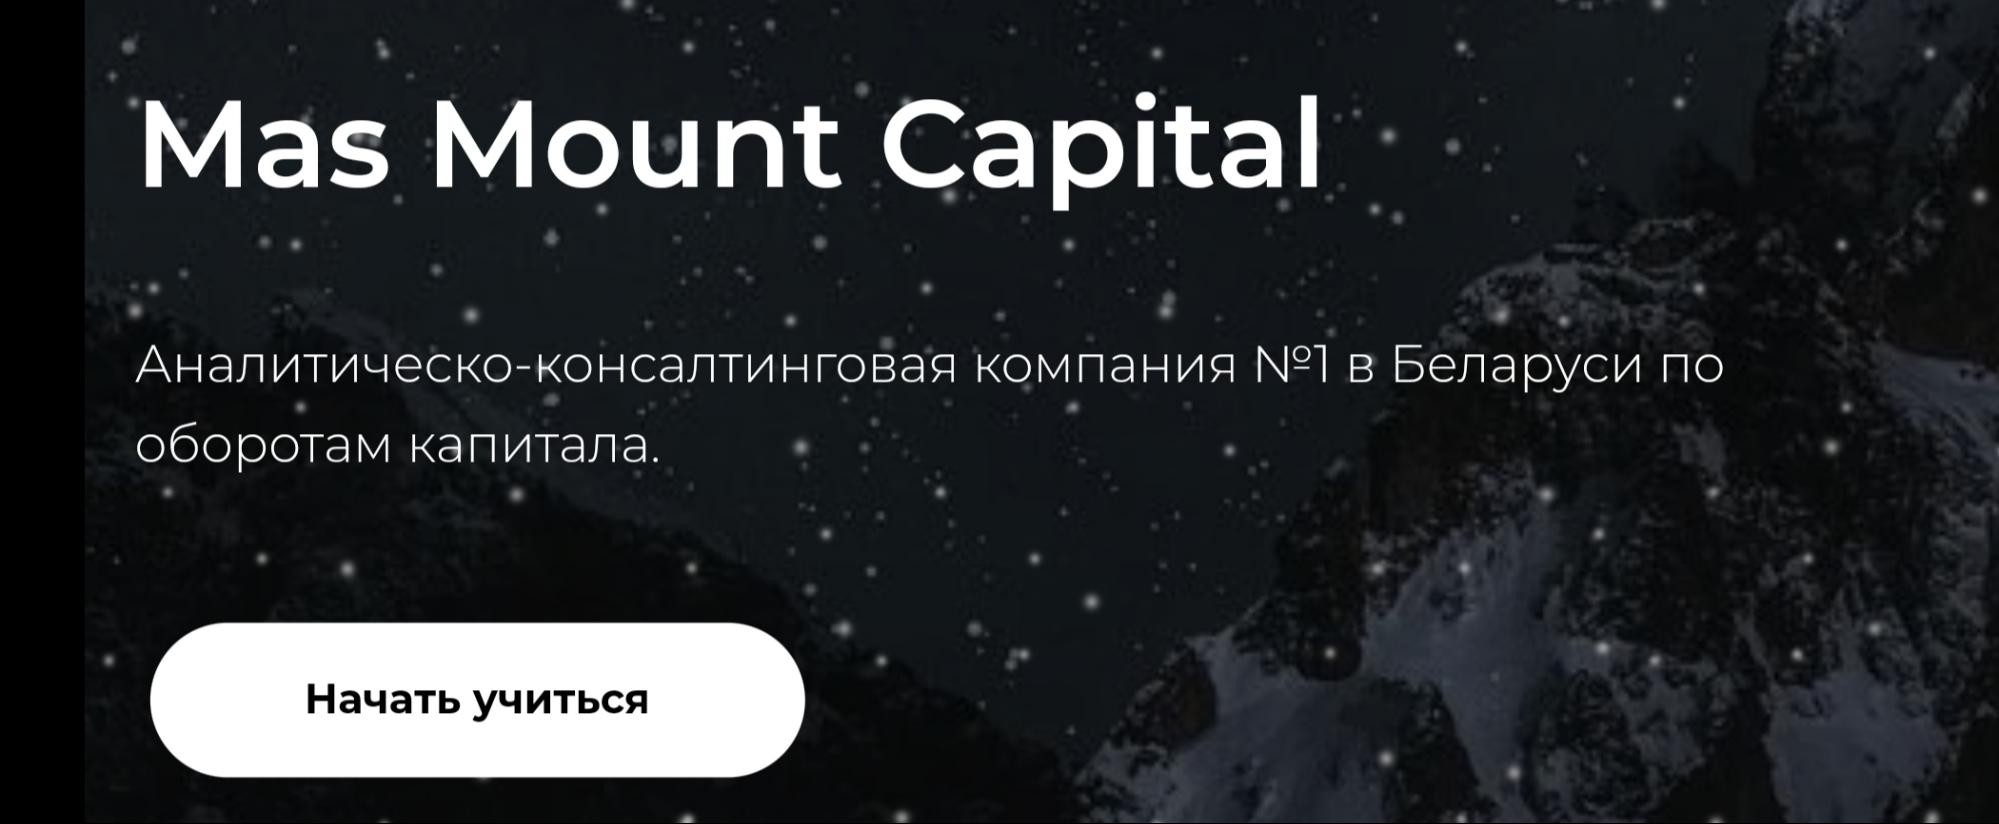 Mas Mount Capital компания обзор